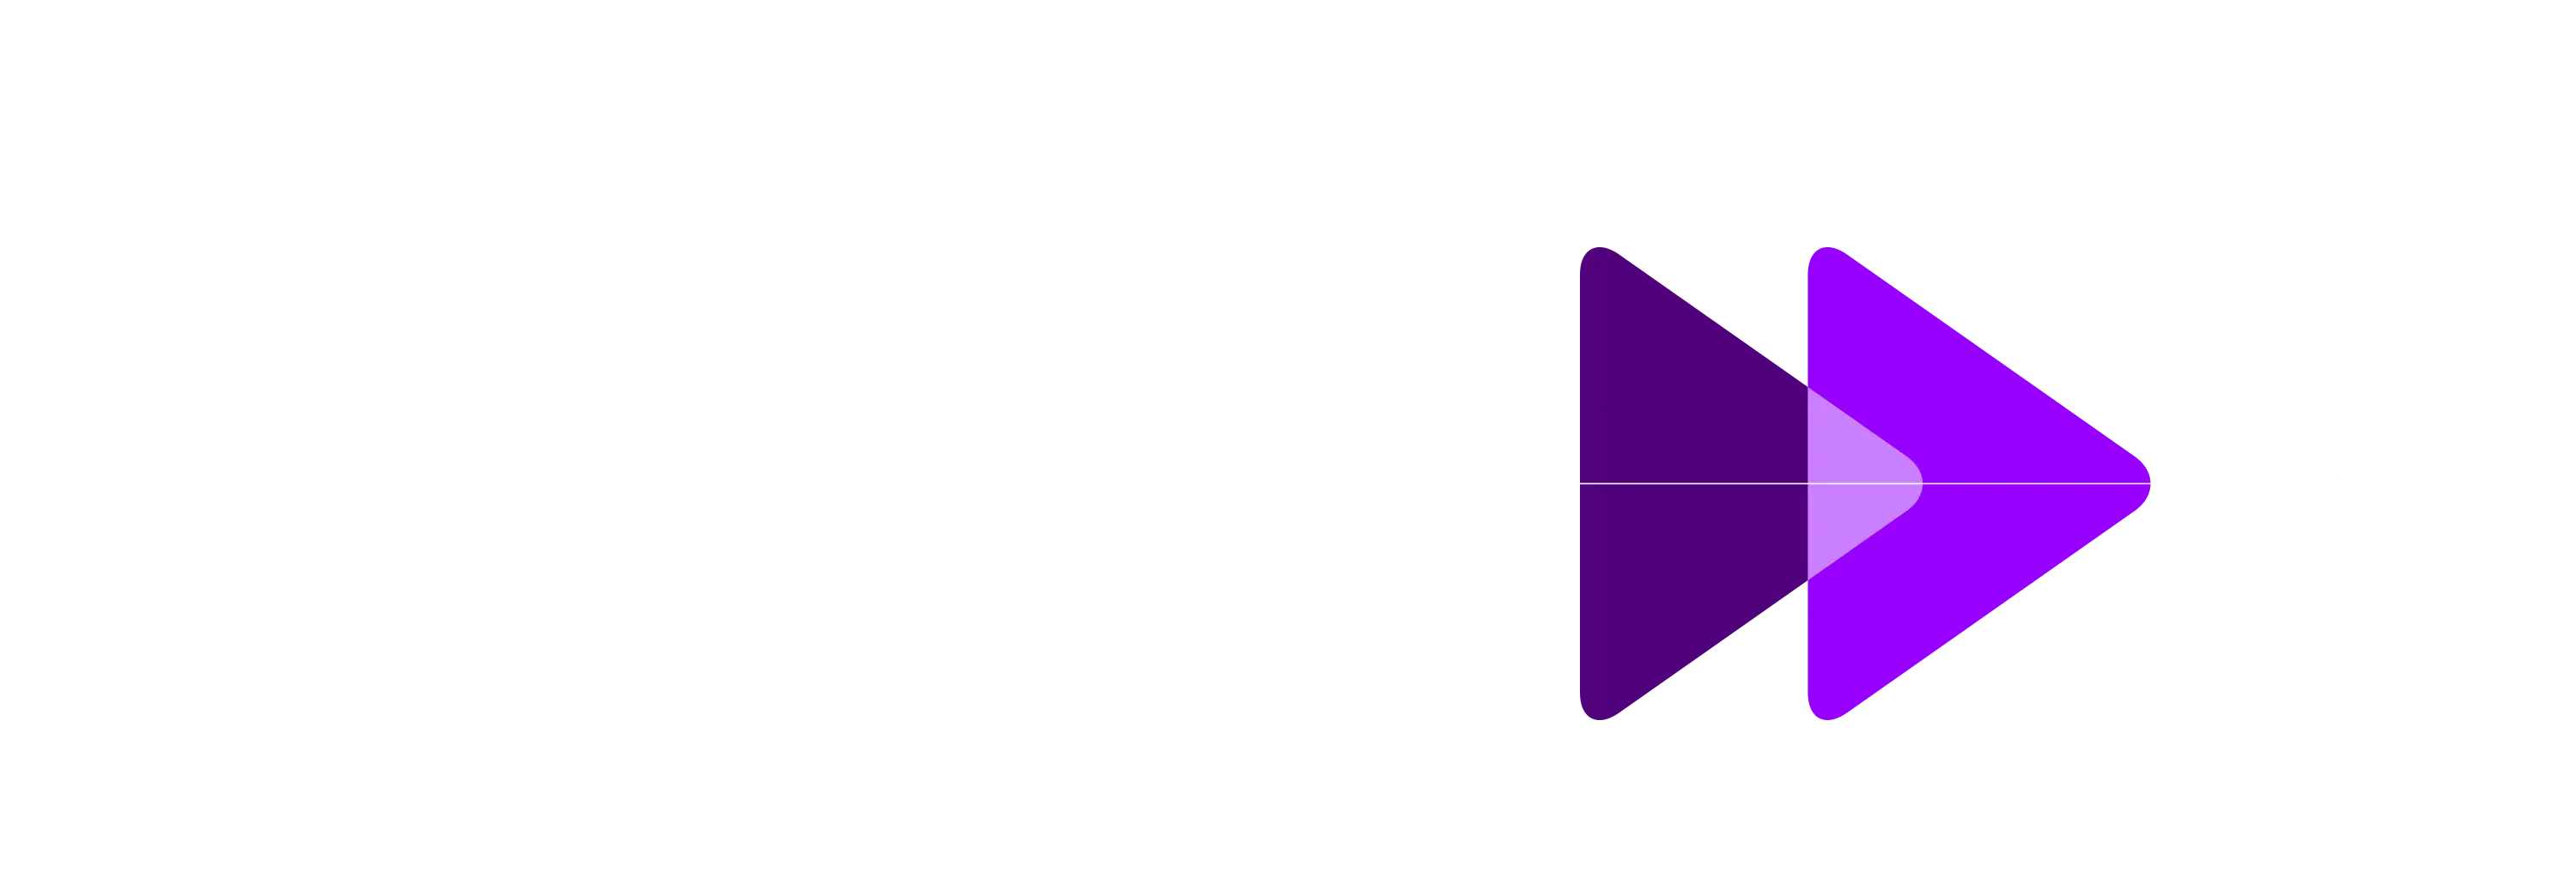 two purple arrows